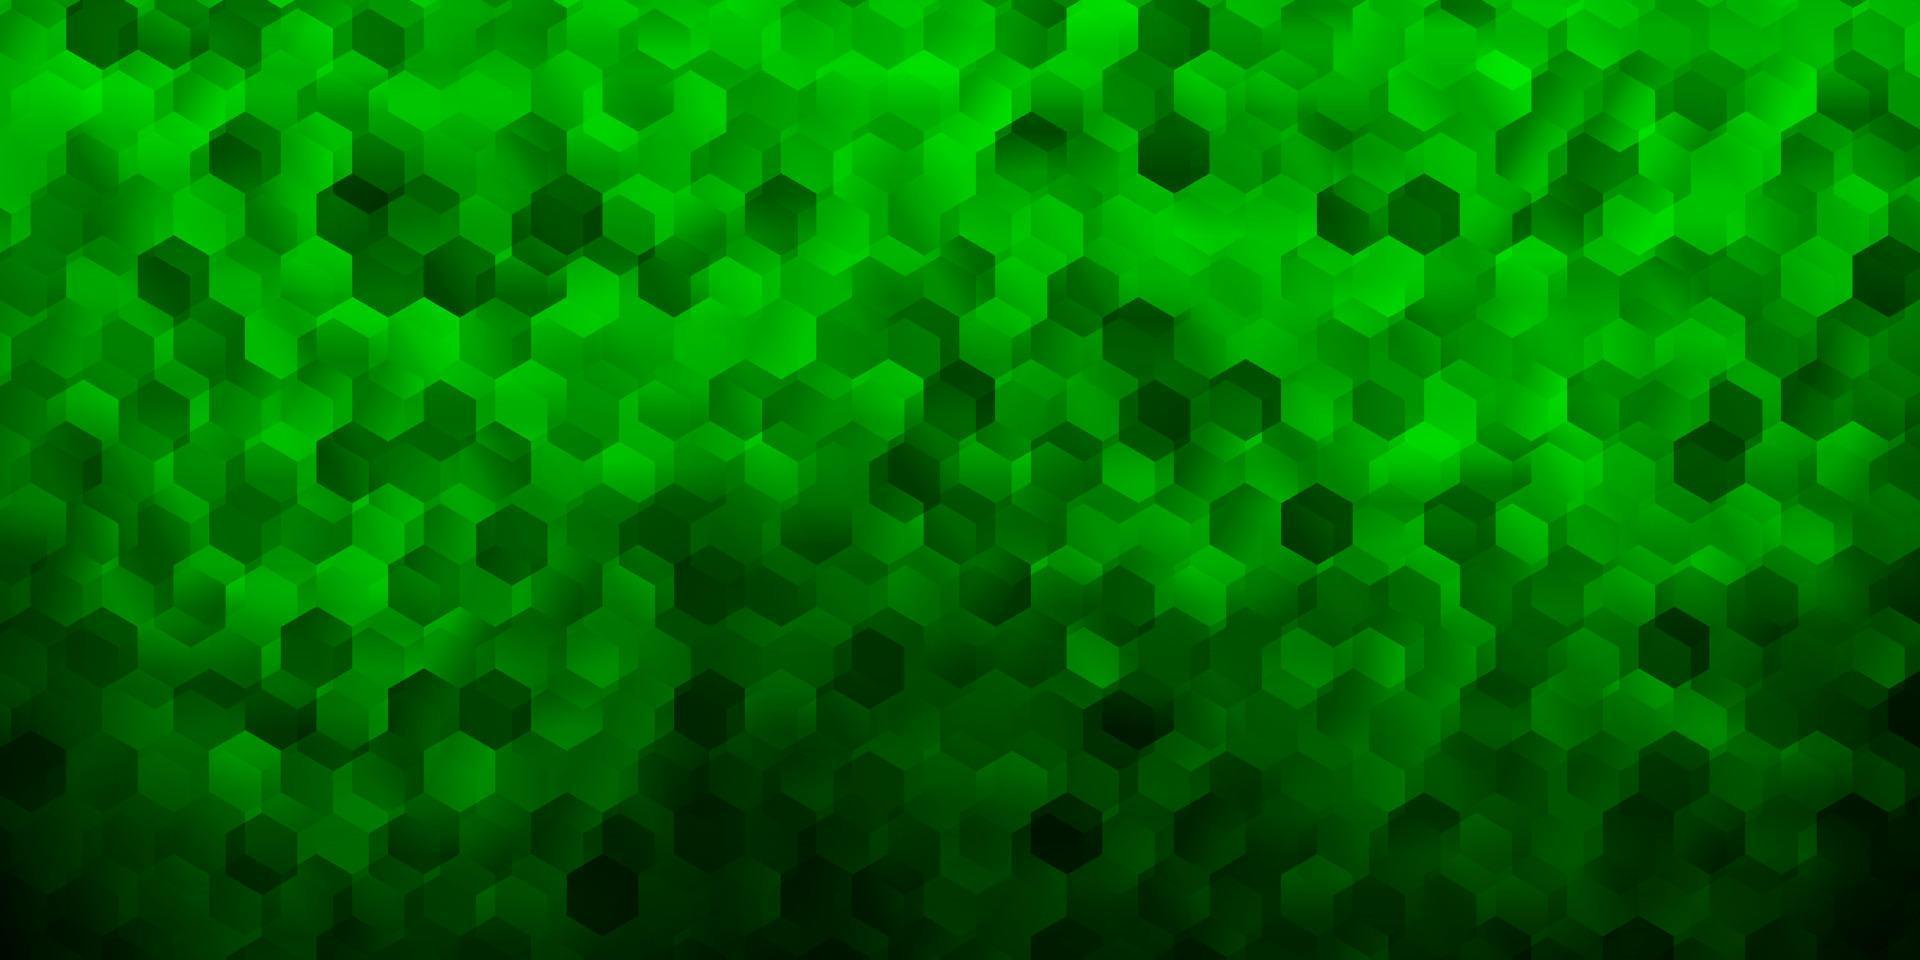 diseño de vector verde oscuro con formas de hexágonos.